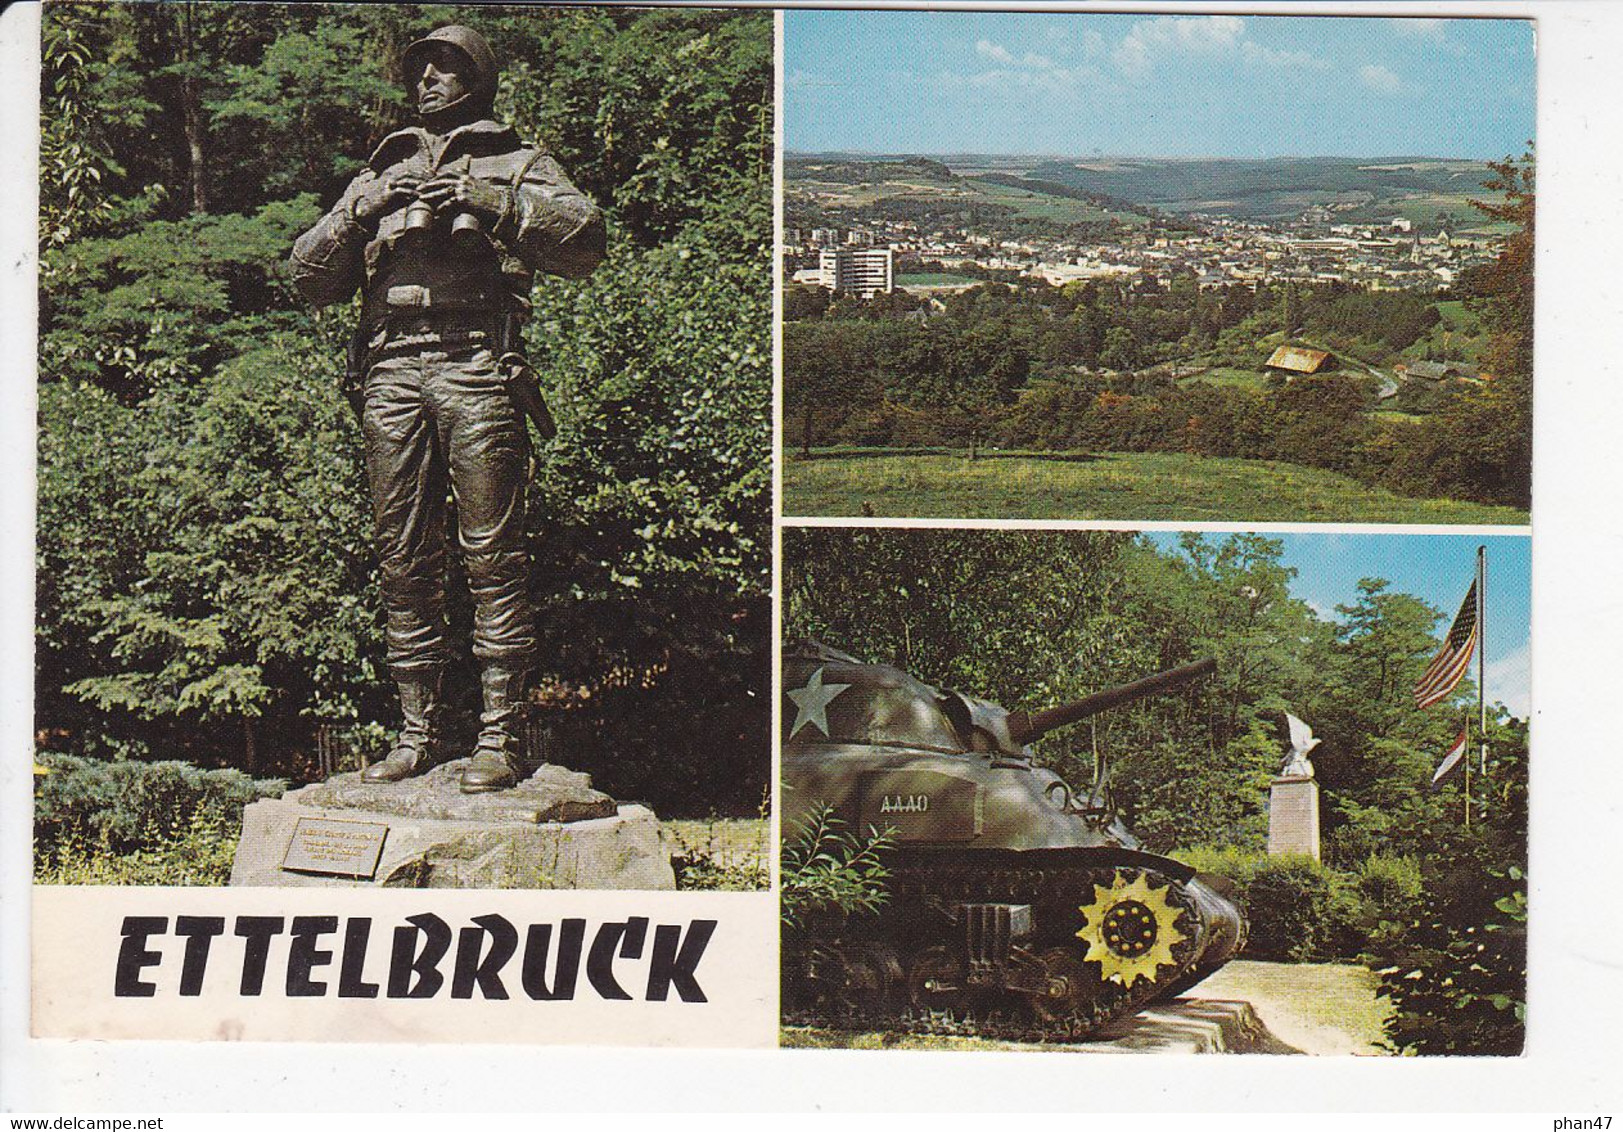 LUXEMBOURG, ETTELBRUCK, Monument PATTON, Char De L'armée, Drapeaux, 3 Vues, Ed. Paul Kraus 1980 Environ - Ettelbrück